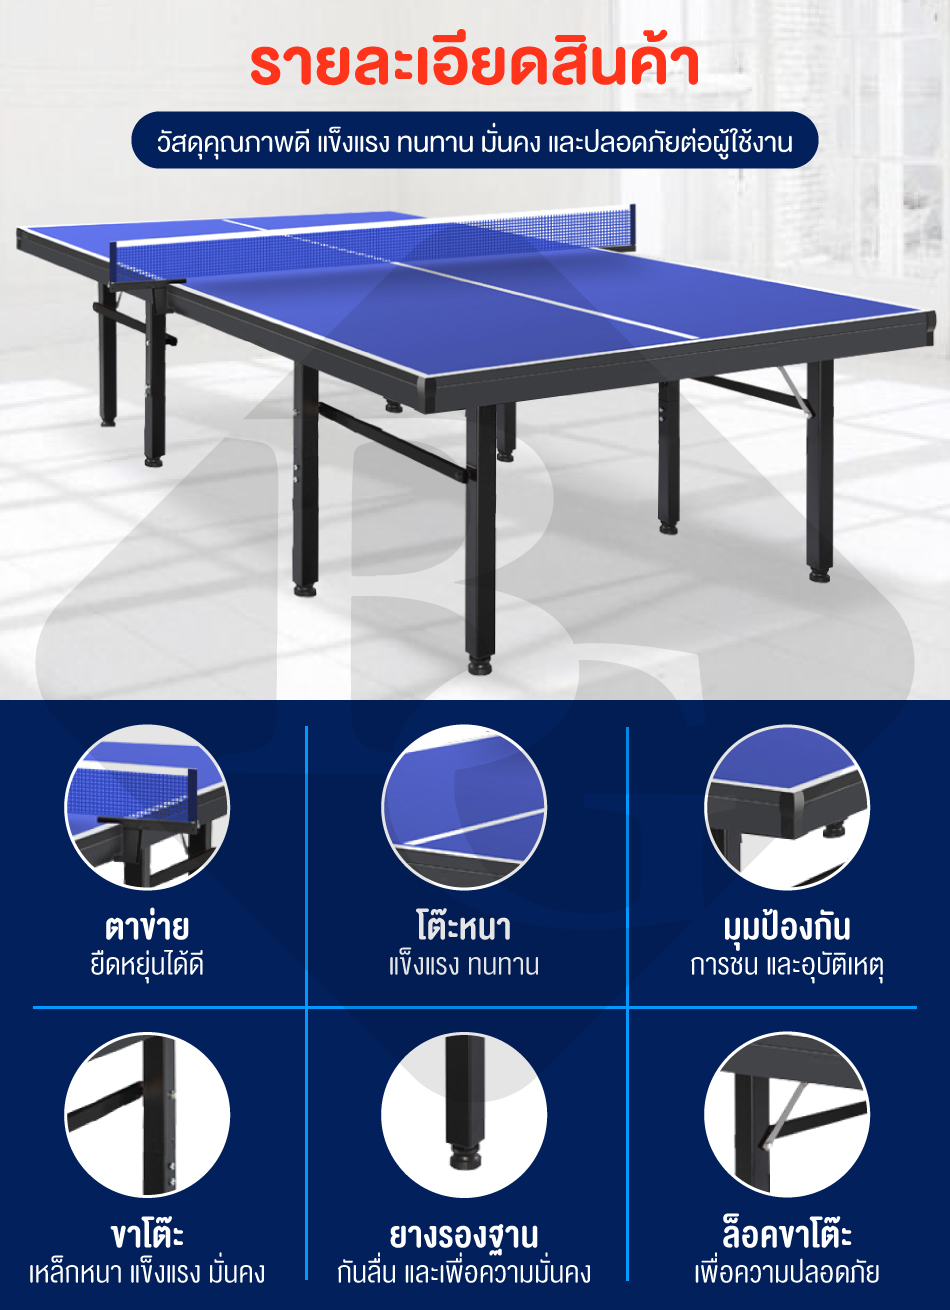 เกี่ยวกับสินค้า B&G โต๊ะปิงปองมาตรฐานแข่งขัน โต๊ะปิงปอง ออกกำลังกายในร่ม สามารถพับเก็บได้ โครงเหล็กแข็งแรง Table 12.24 mm HDF Table Tennis รุ่น 5007